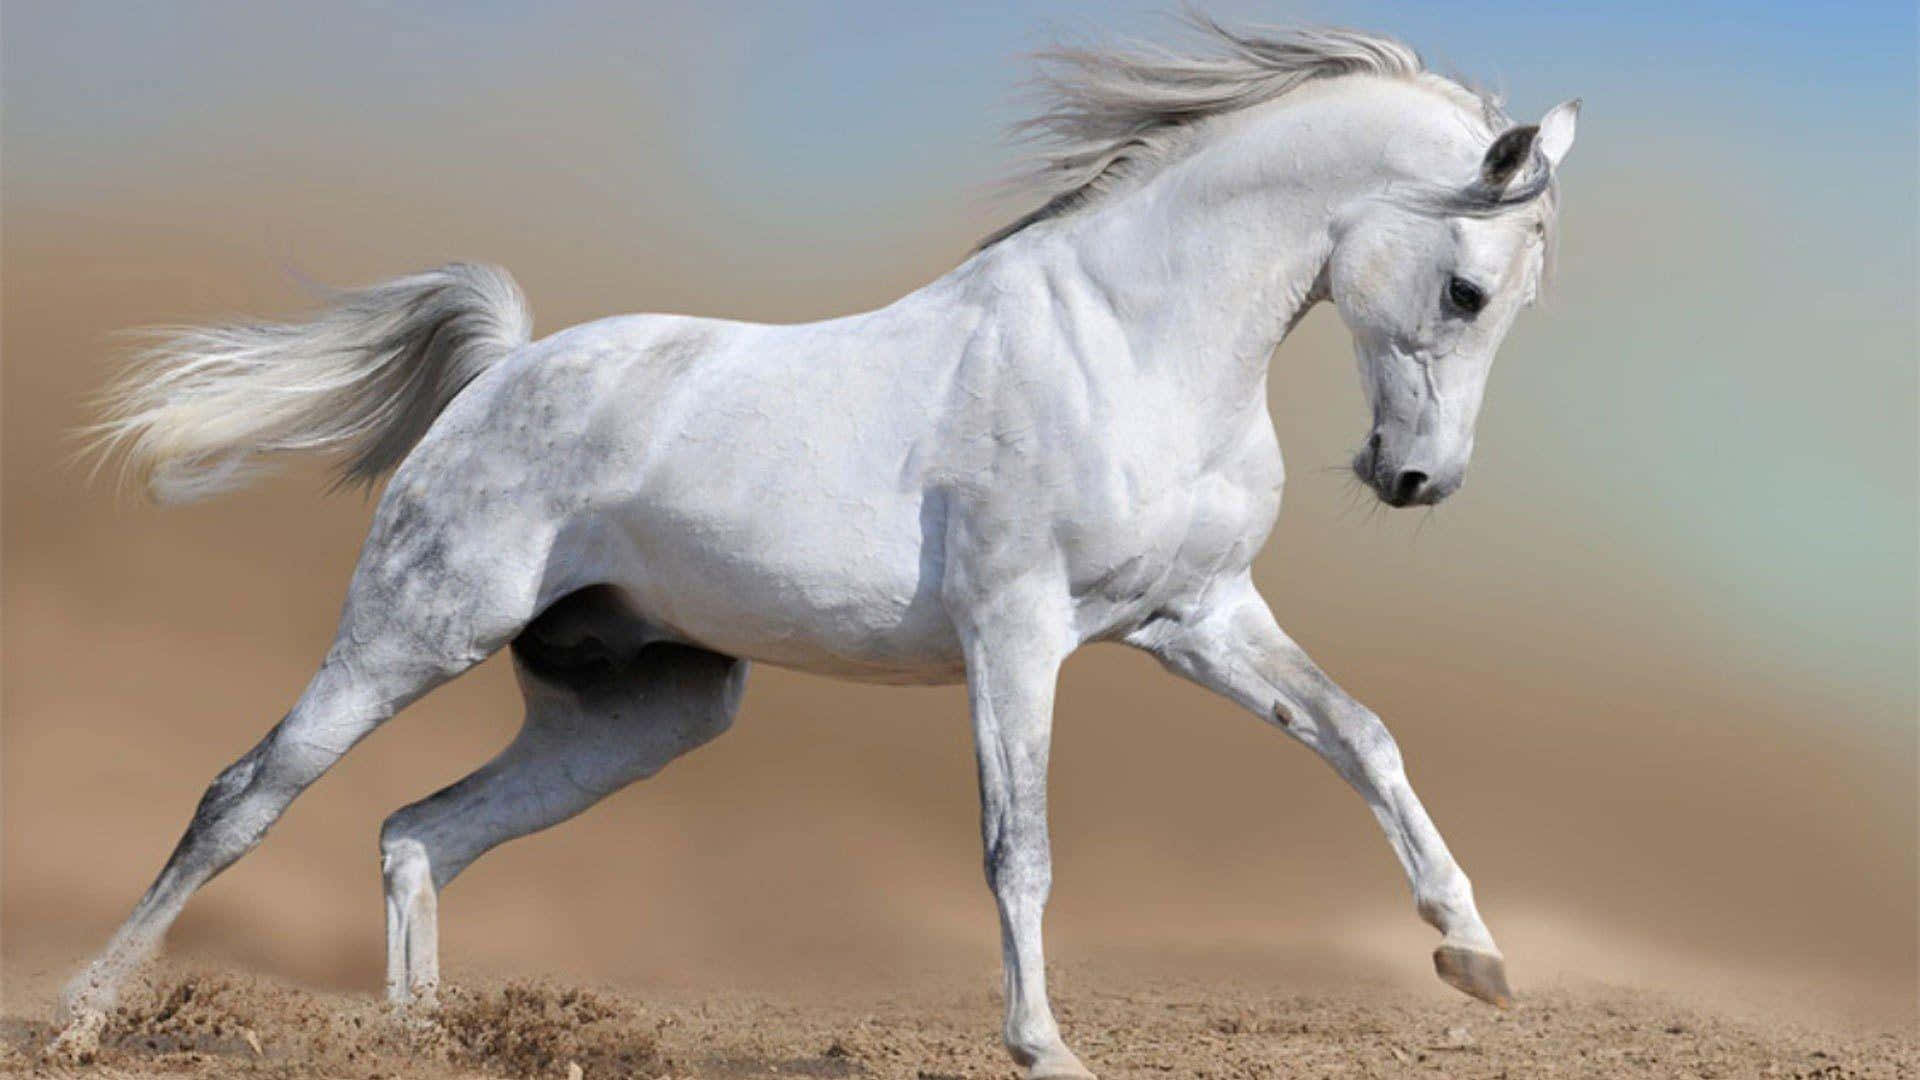 Unmaestoso Cavallo Bianco Che Si Erge Con Grazia In Un Prato, Prendendo Il Tempo Per Godersi L'atmosfera Tranquilla Che Lo Circonda.